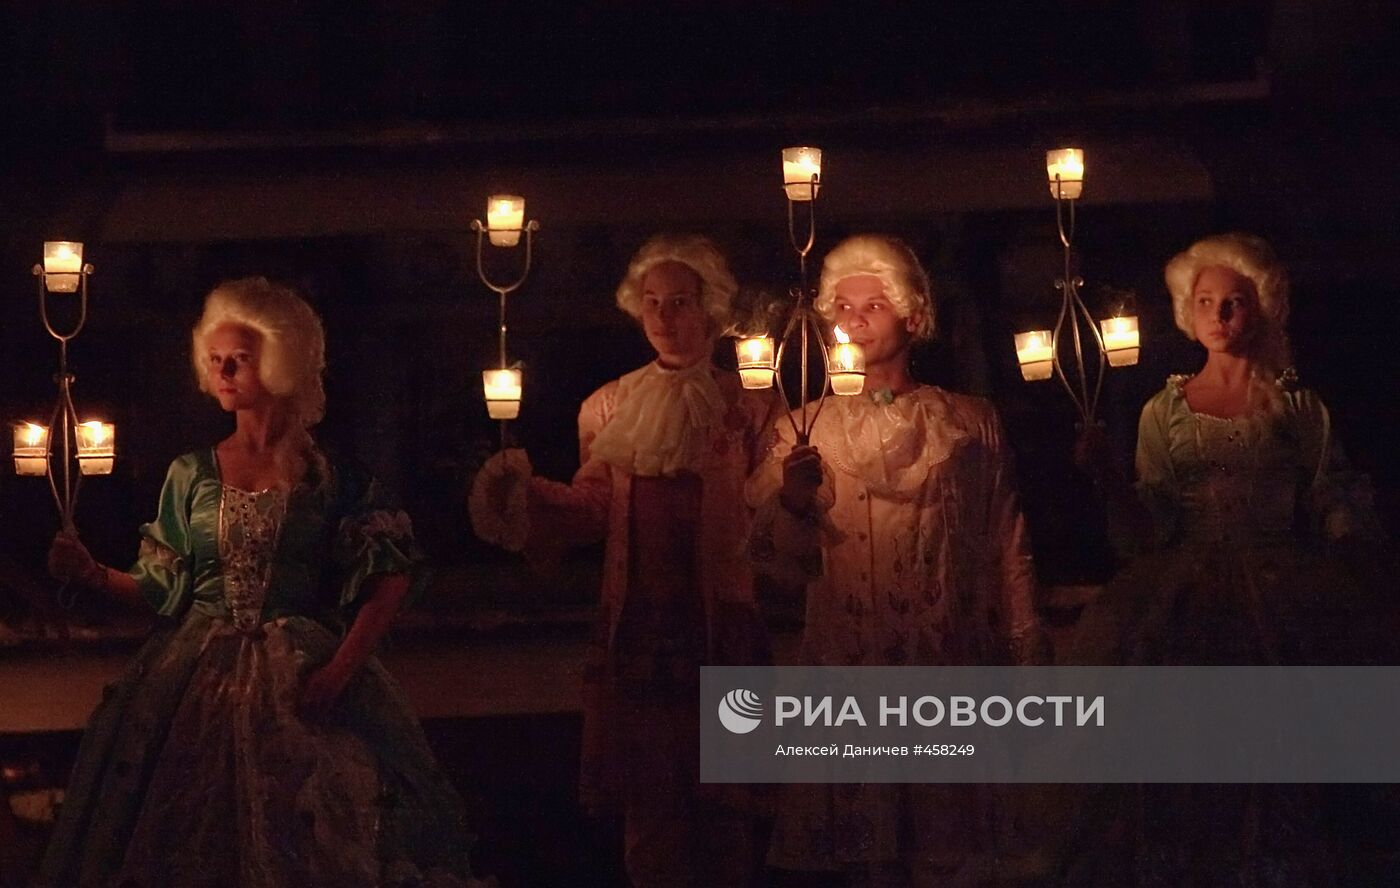 Светомузыкальный спектакль "Легенда четырех стихий" в Петергофе